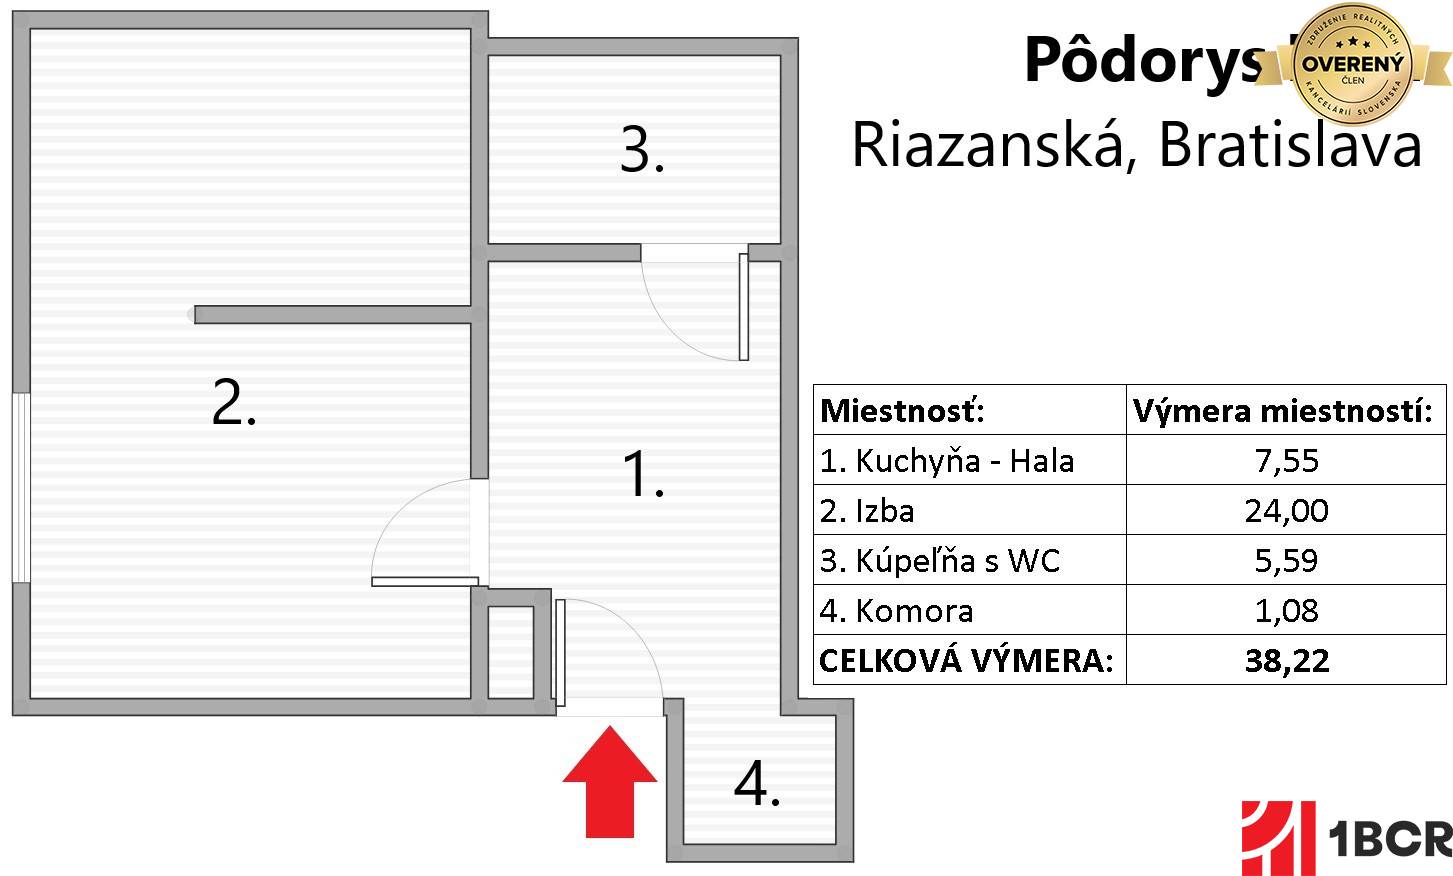 Pôdorys bytu - Riazanská, Bratislava.jpg